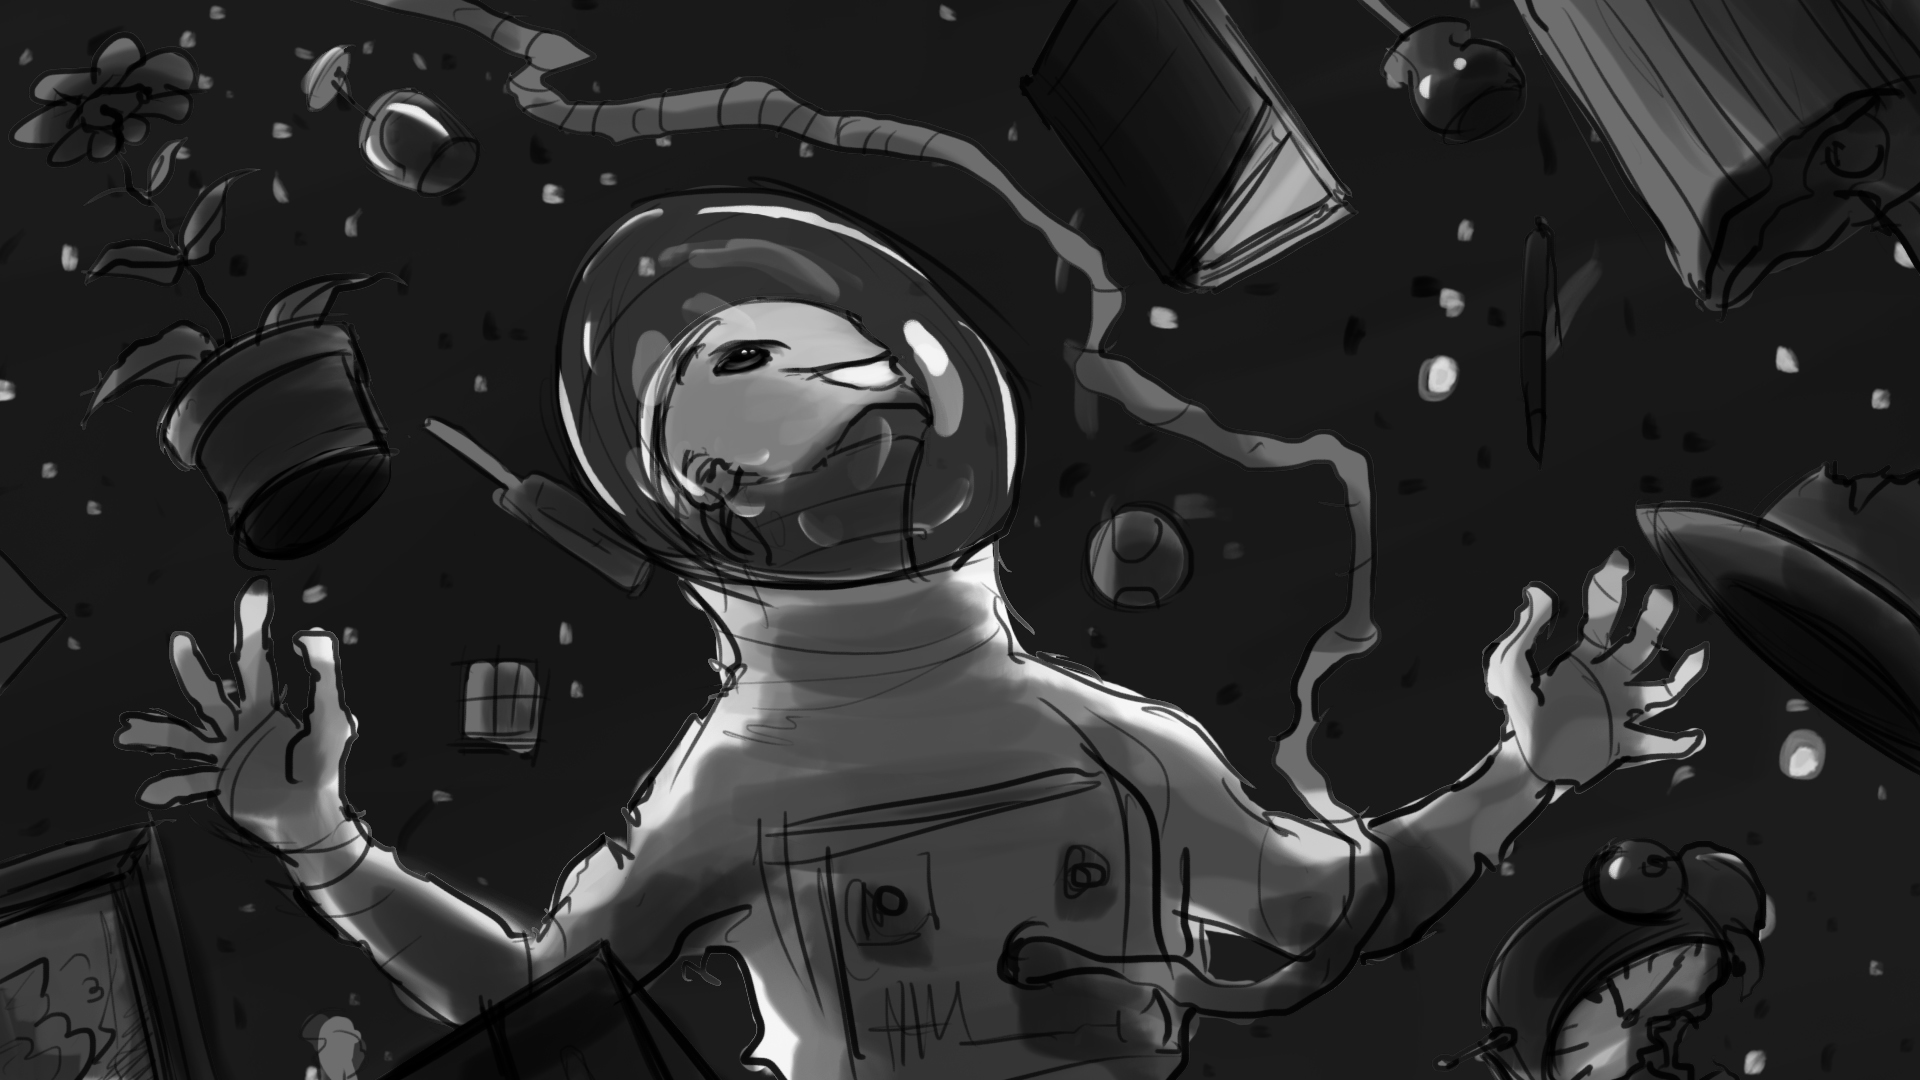 Rocket_Man_Storyboard_Artboard 33.jpg